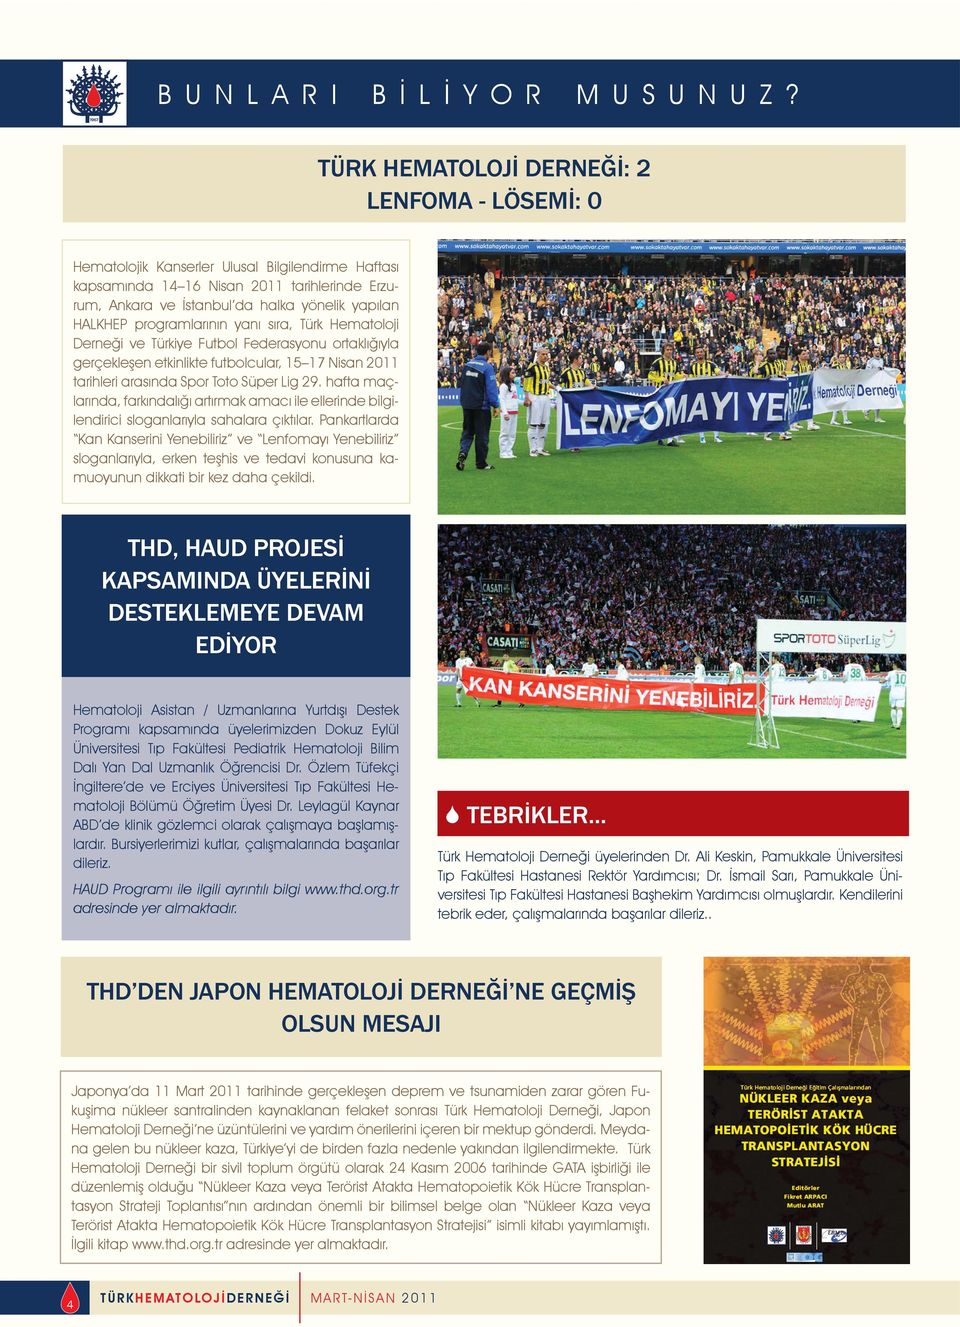 programlarının yanı sıra, Türk Hematoloji Derneği ve Türkiye Futbol Federasyonu ortaklığıyla gerçekleşen etkinlikte futbolcular, 15 17 Nisan 2011 tarihleri arasında Spor Toto Süper Lig 29.